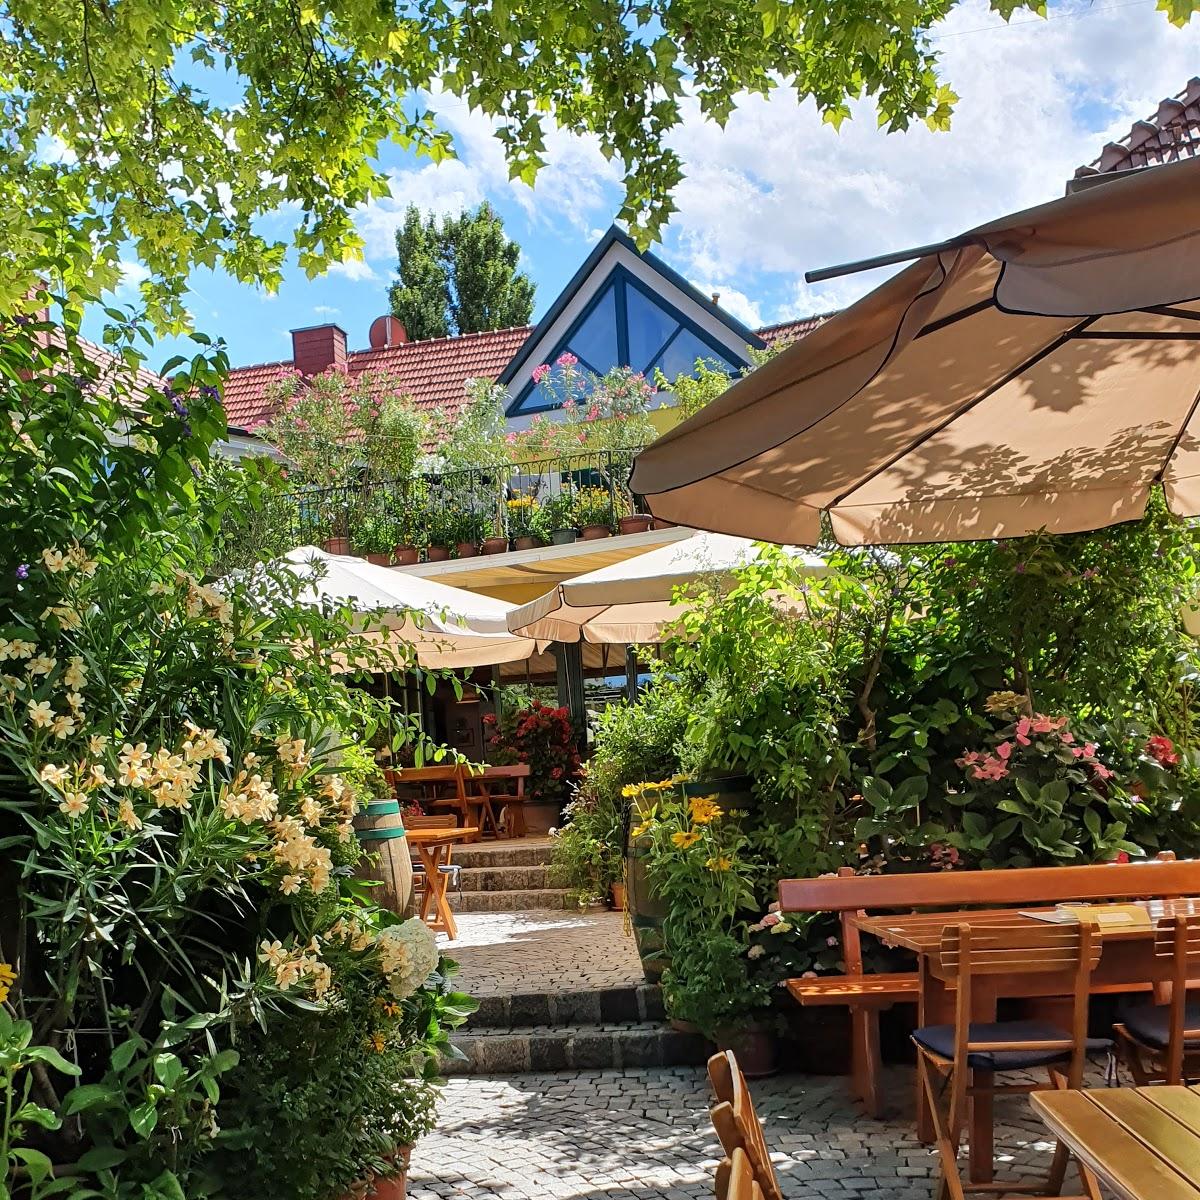 Restaurant "Alphart am Mühlbach, Weingut und Heuriger" in Traiskirchen